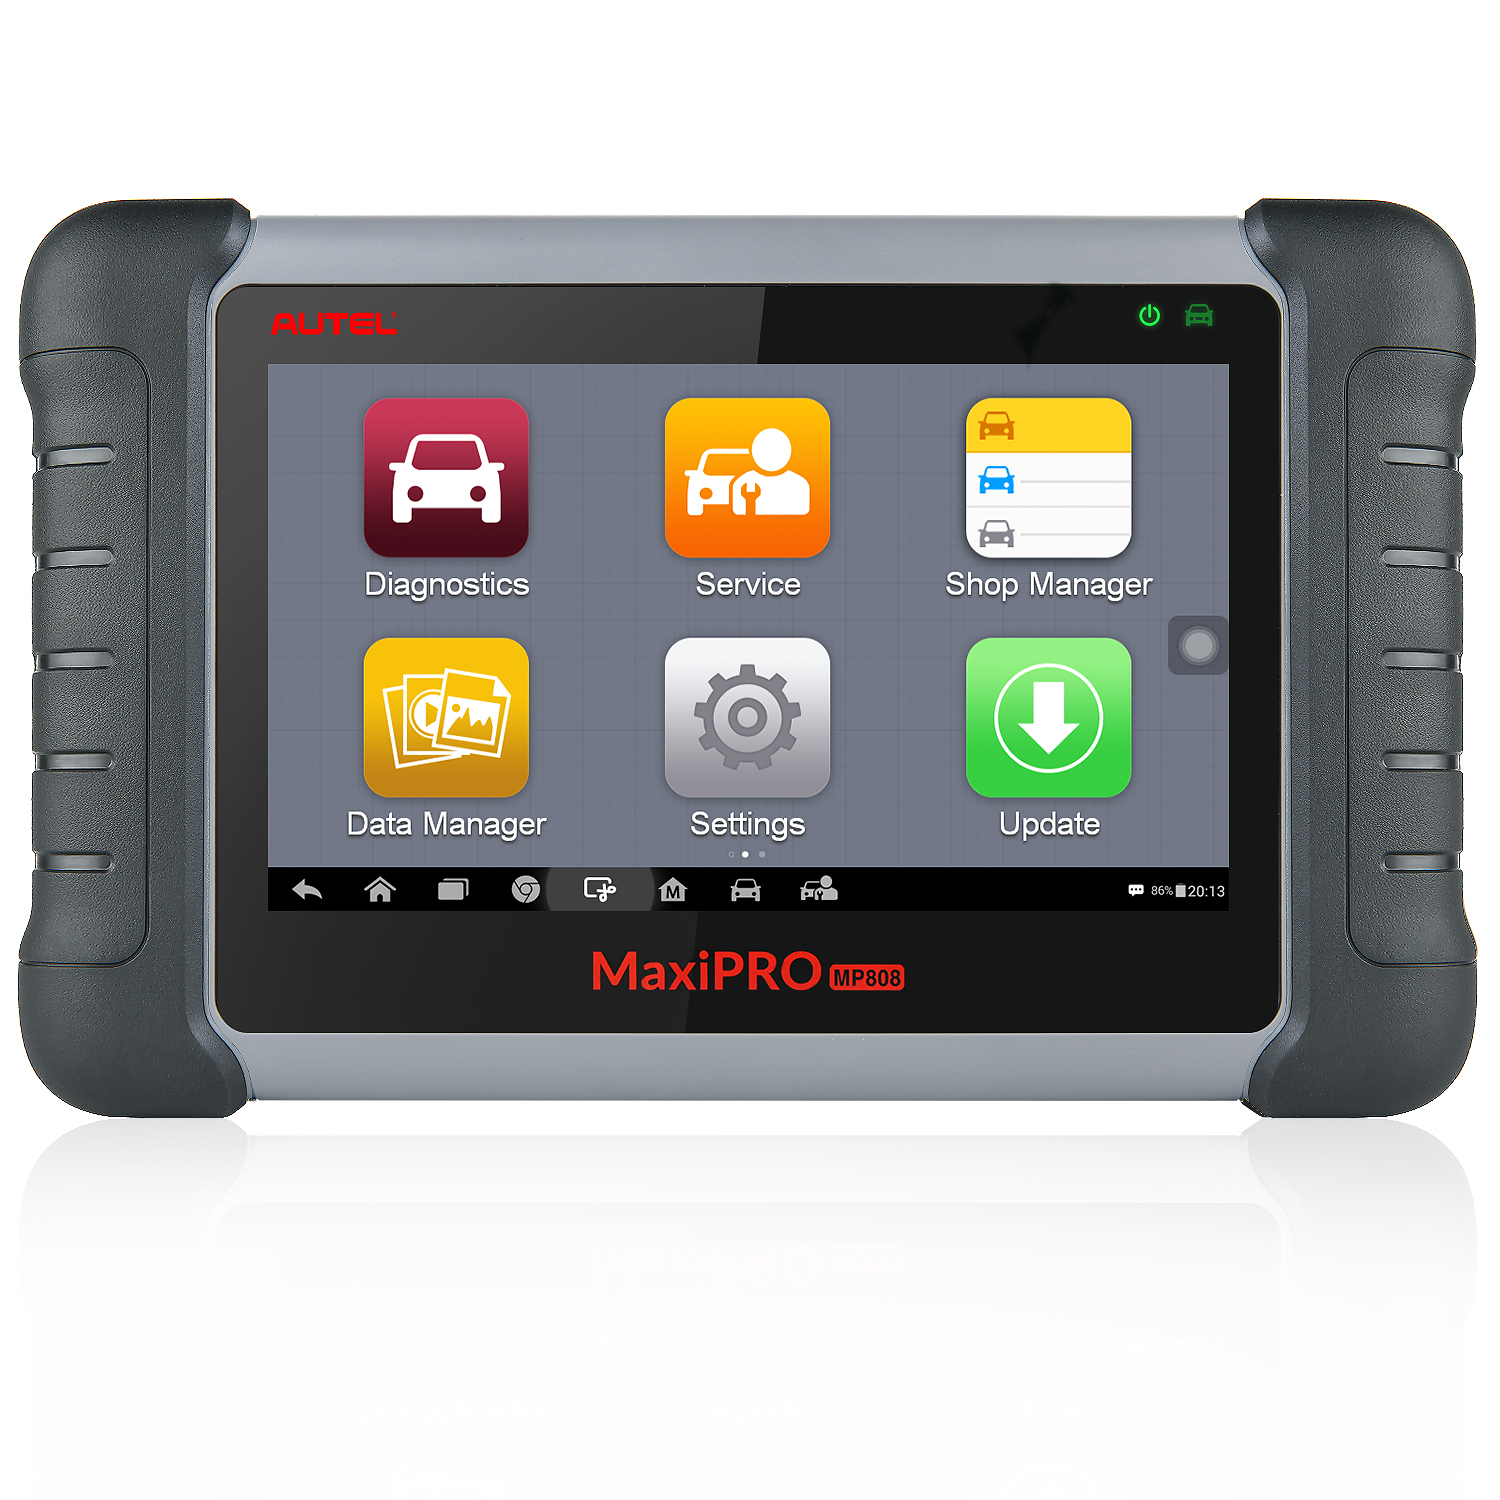 Autel maxipro mp808k mp808 automotive diagnostic tools updated version of ds808 vehicle diagnostic machine